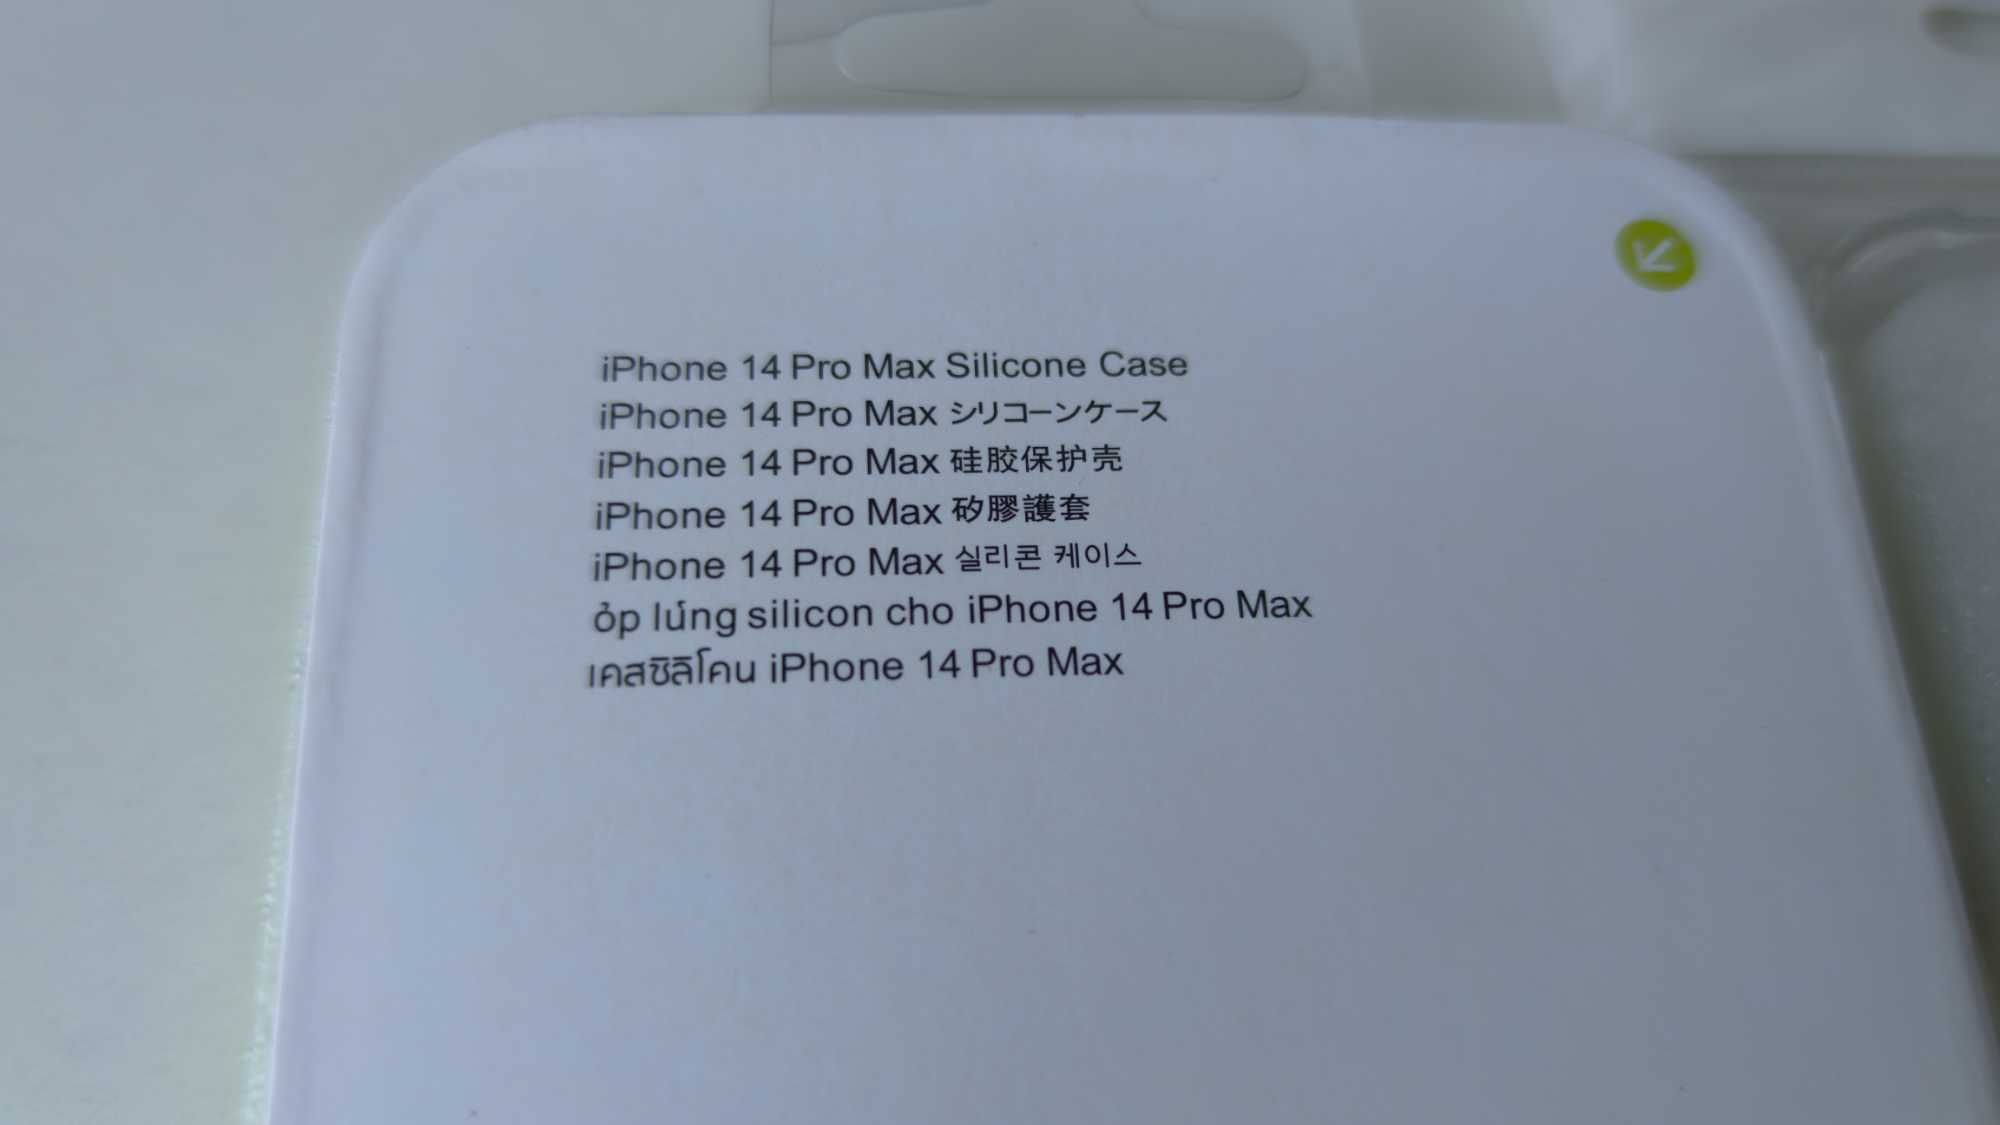 Чехол к iPhone 14 Pro Max, закрытые камеры, новый